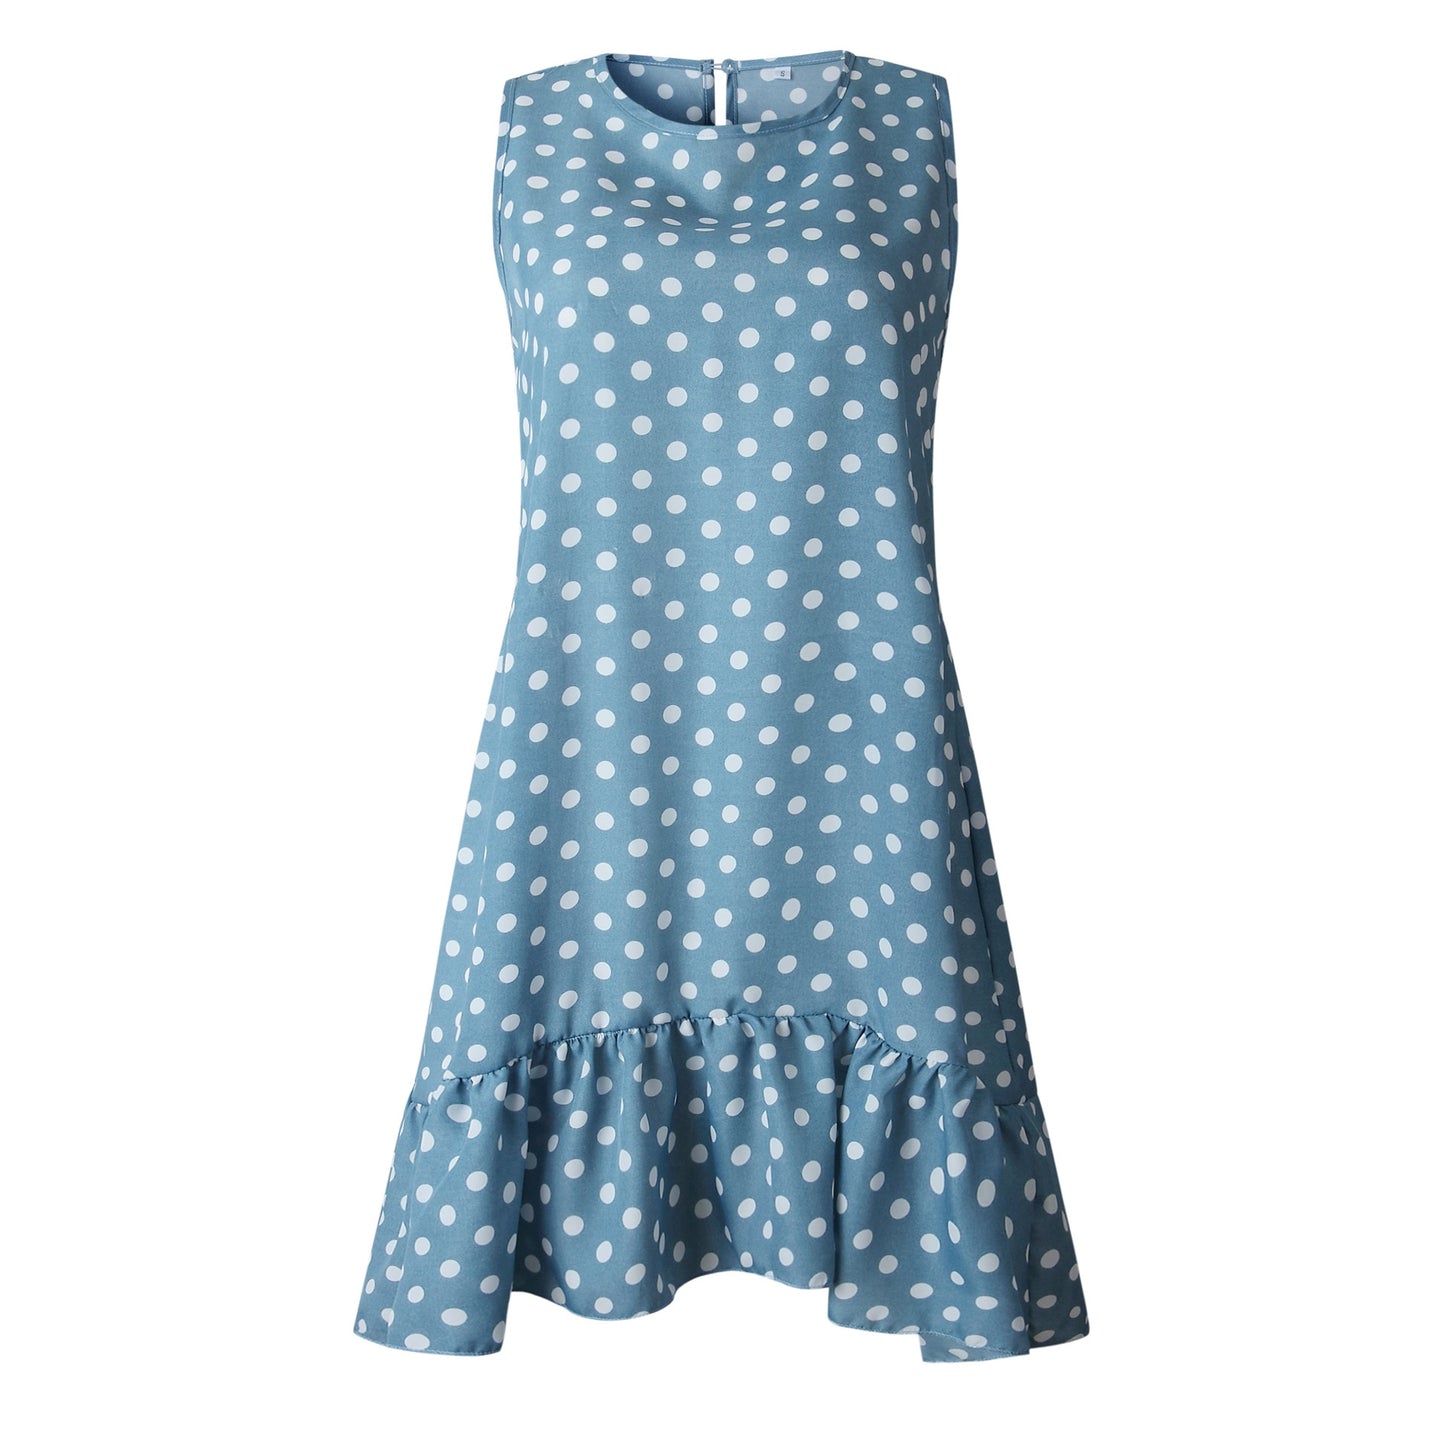 Women Summer Ruffles Polka Dot Sleeveless Mini Dresses